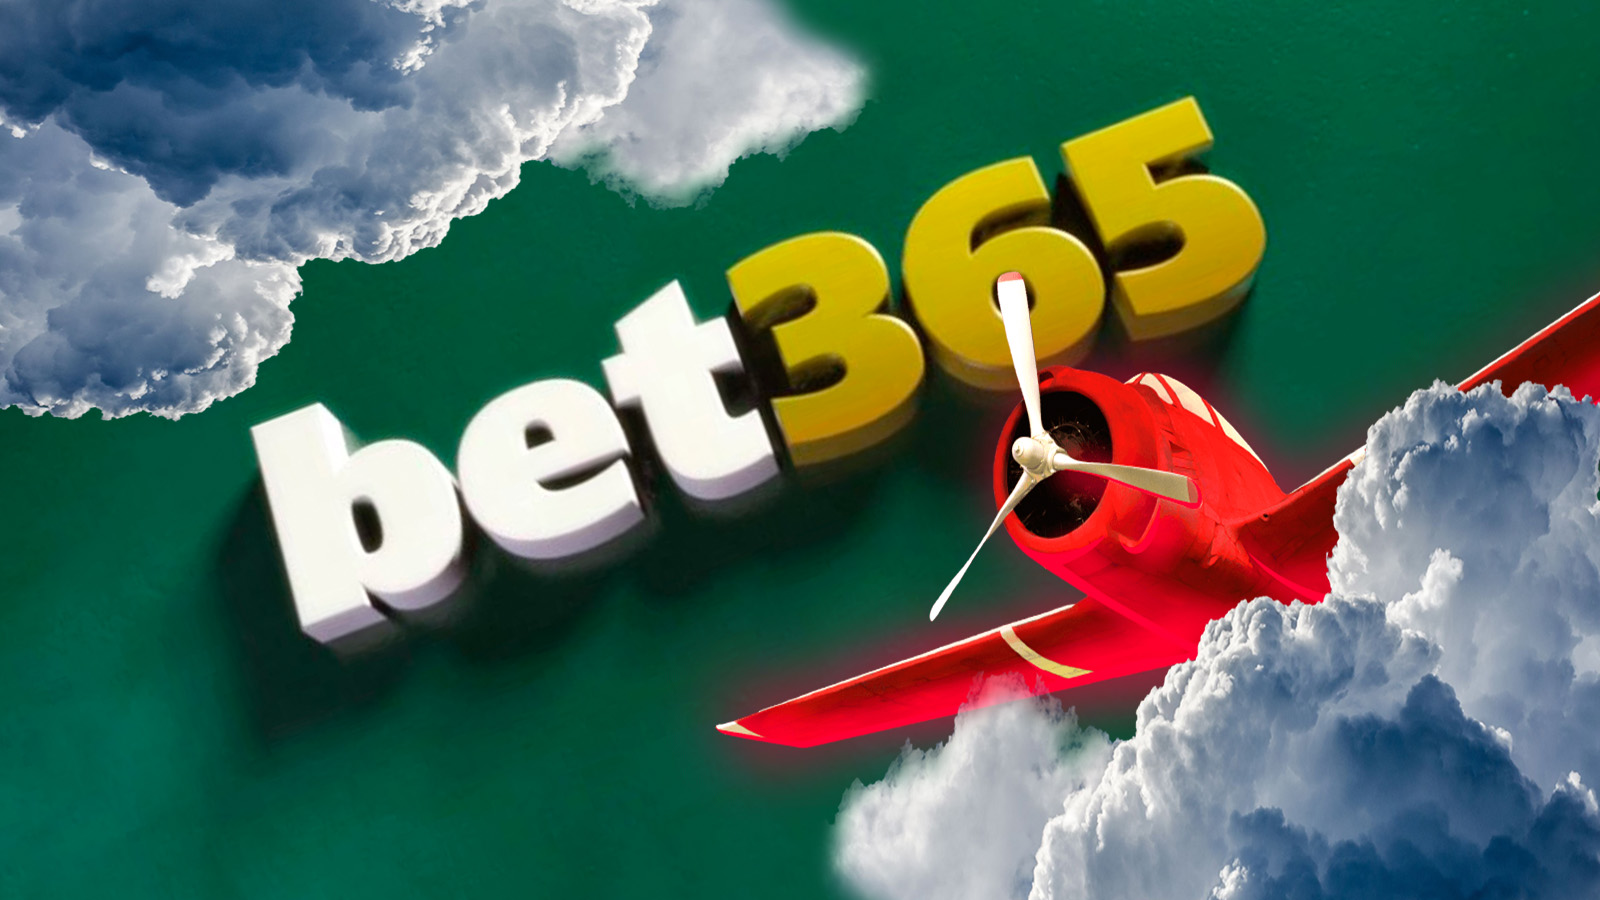 Aviator Bet365: Conheça o Jogo do Aviãozinho da Bet365